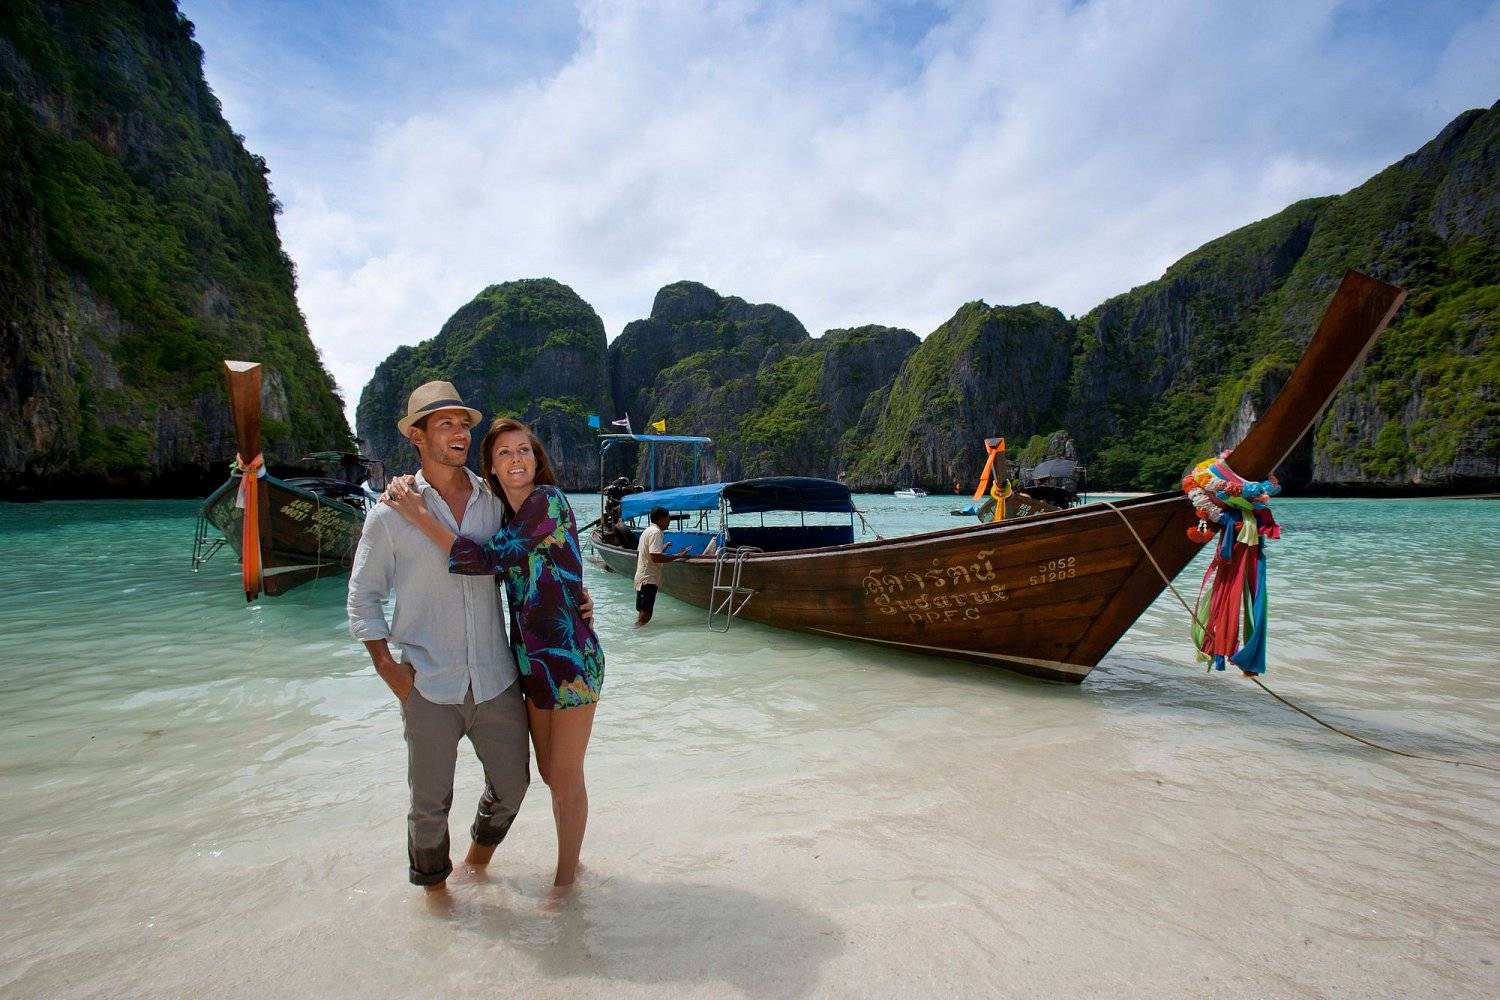 Какой остров в таиланде лучше для отдыха